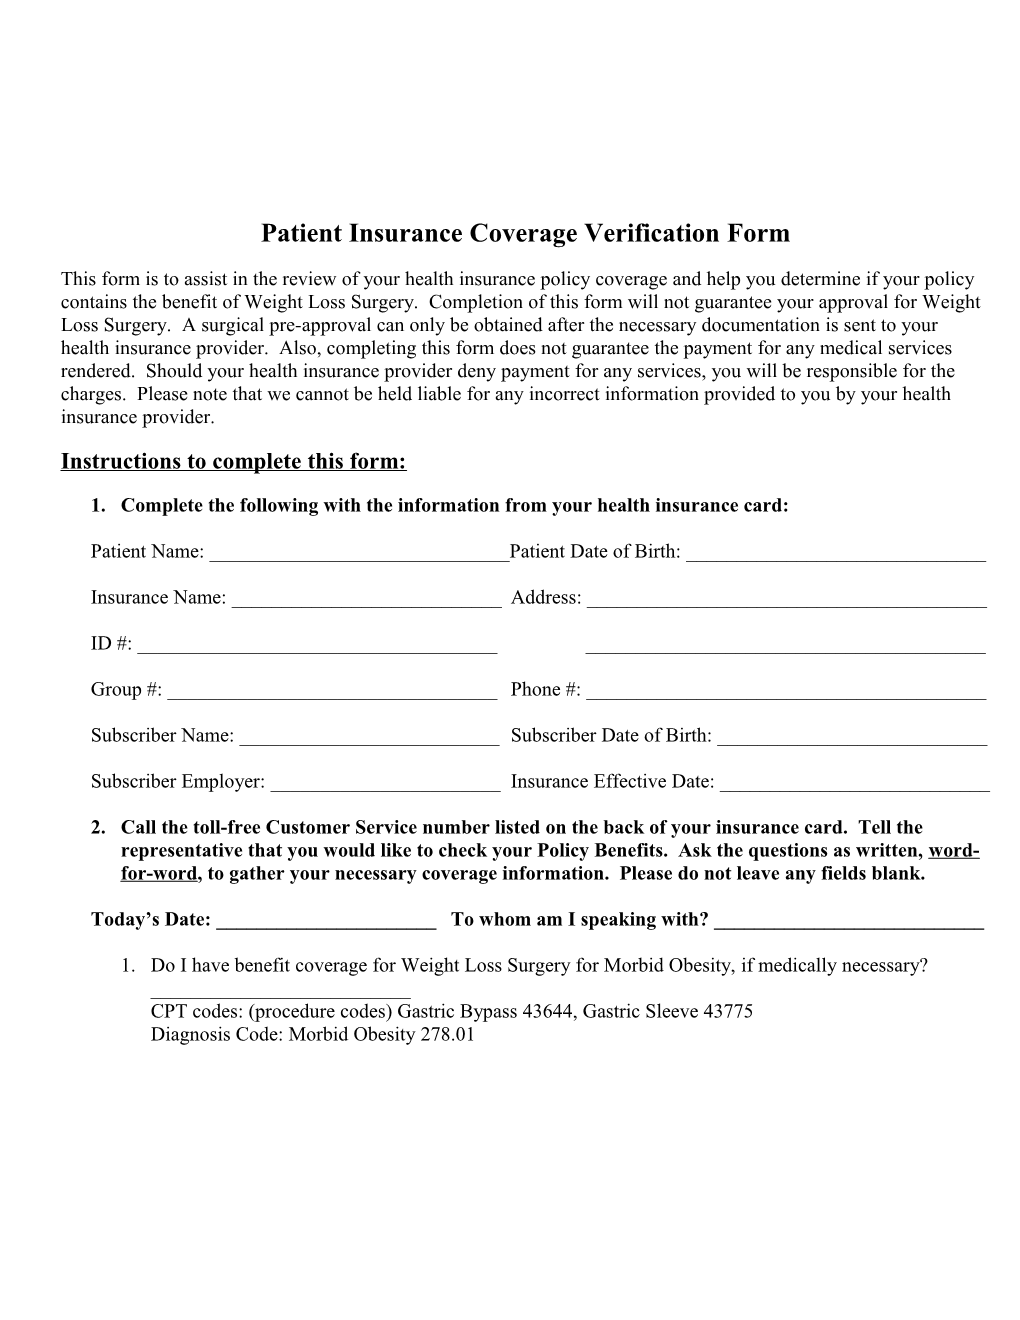 Patient Insurance Coverage Verification Form